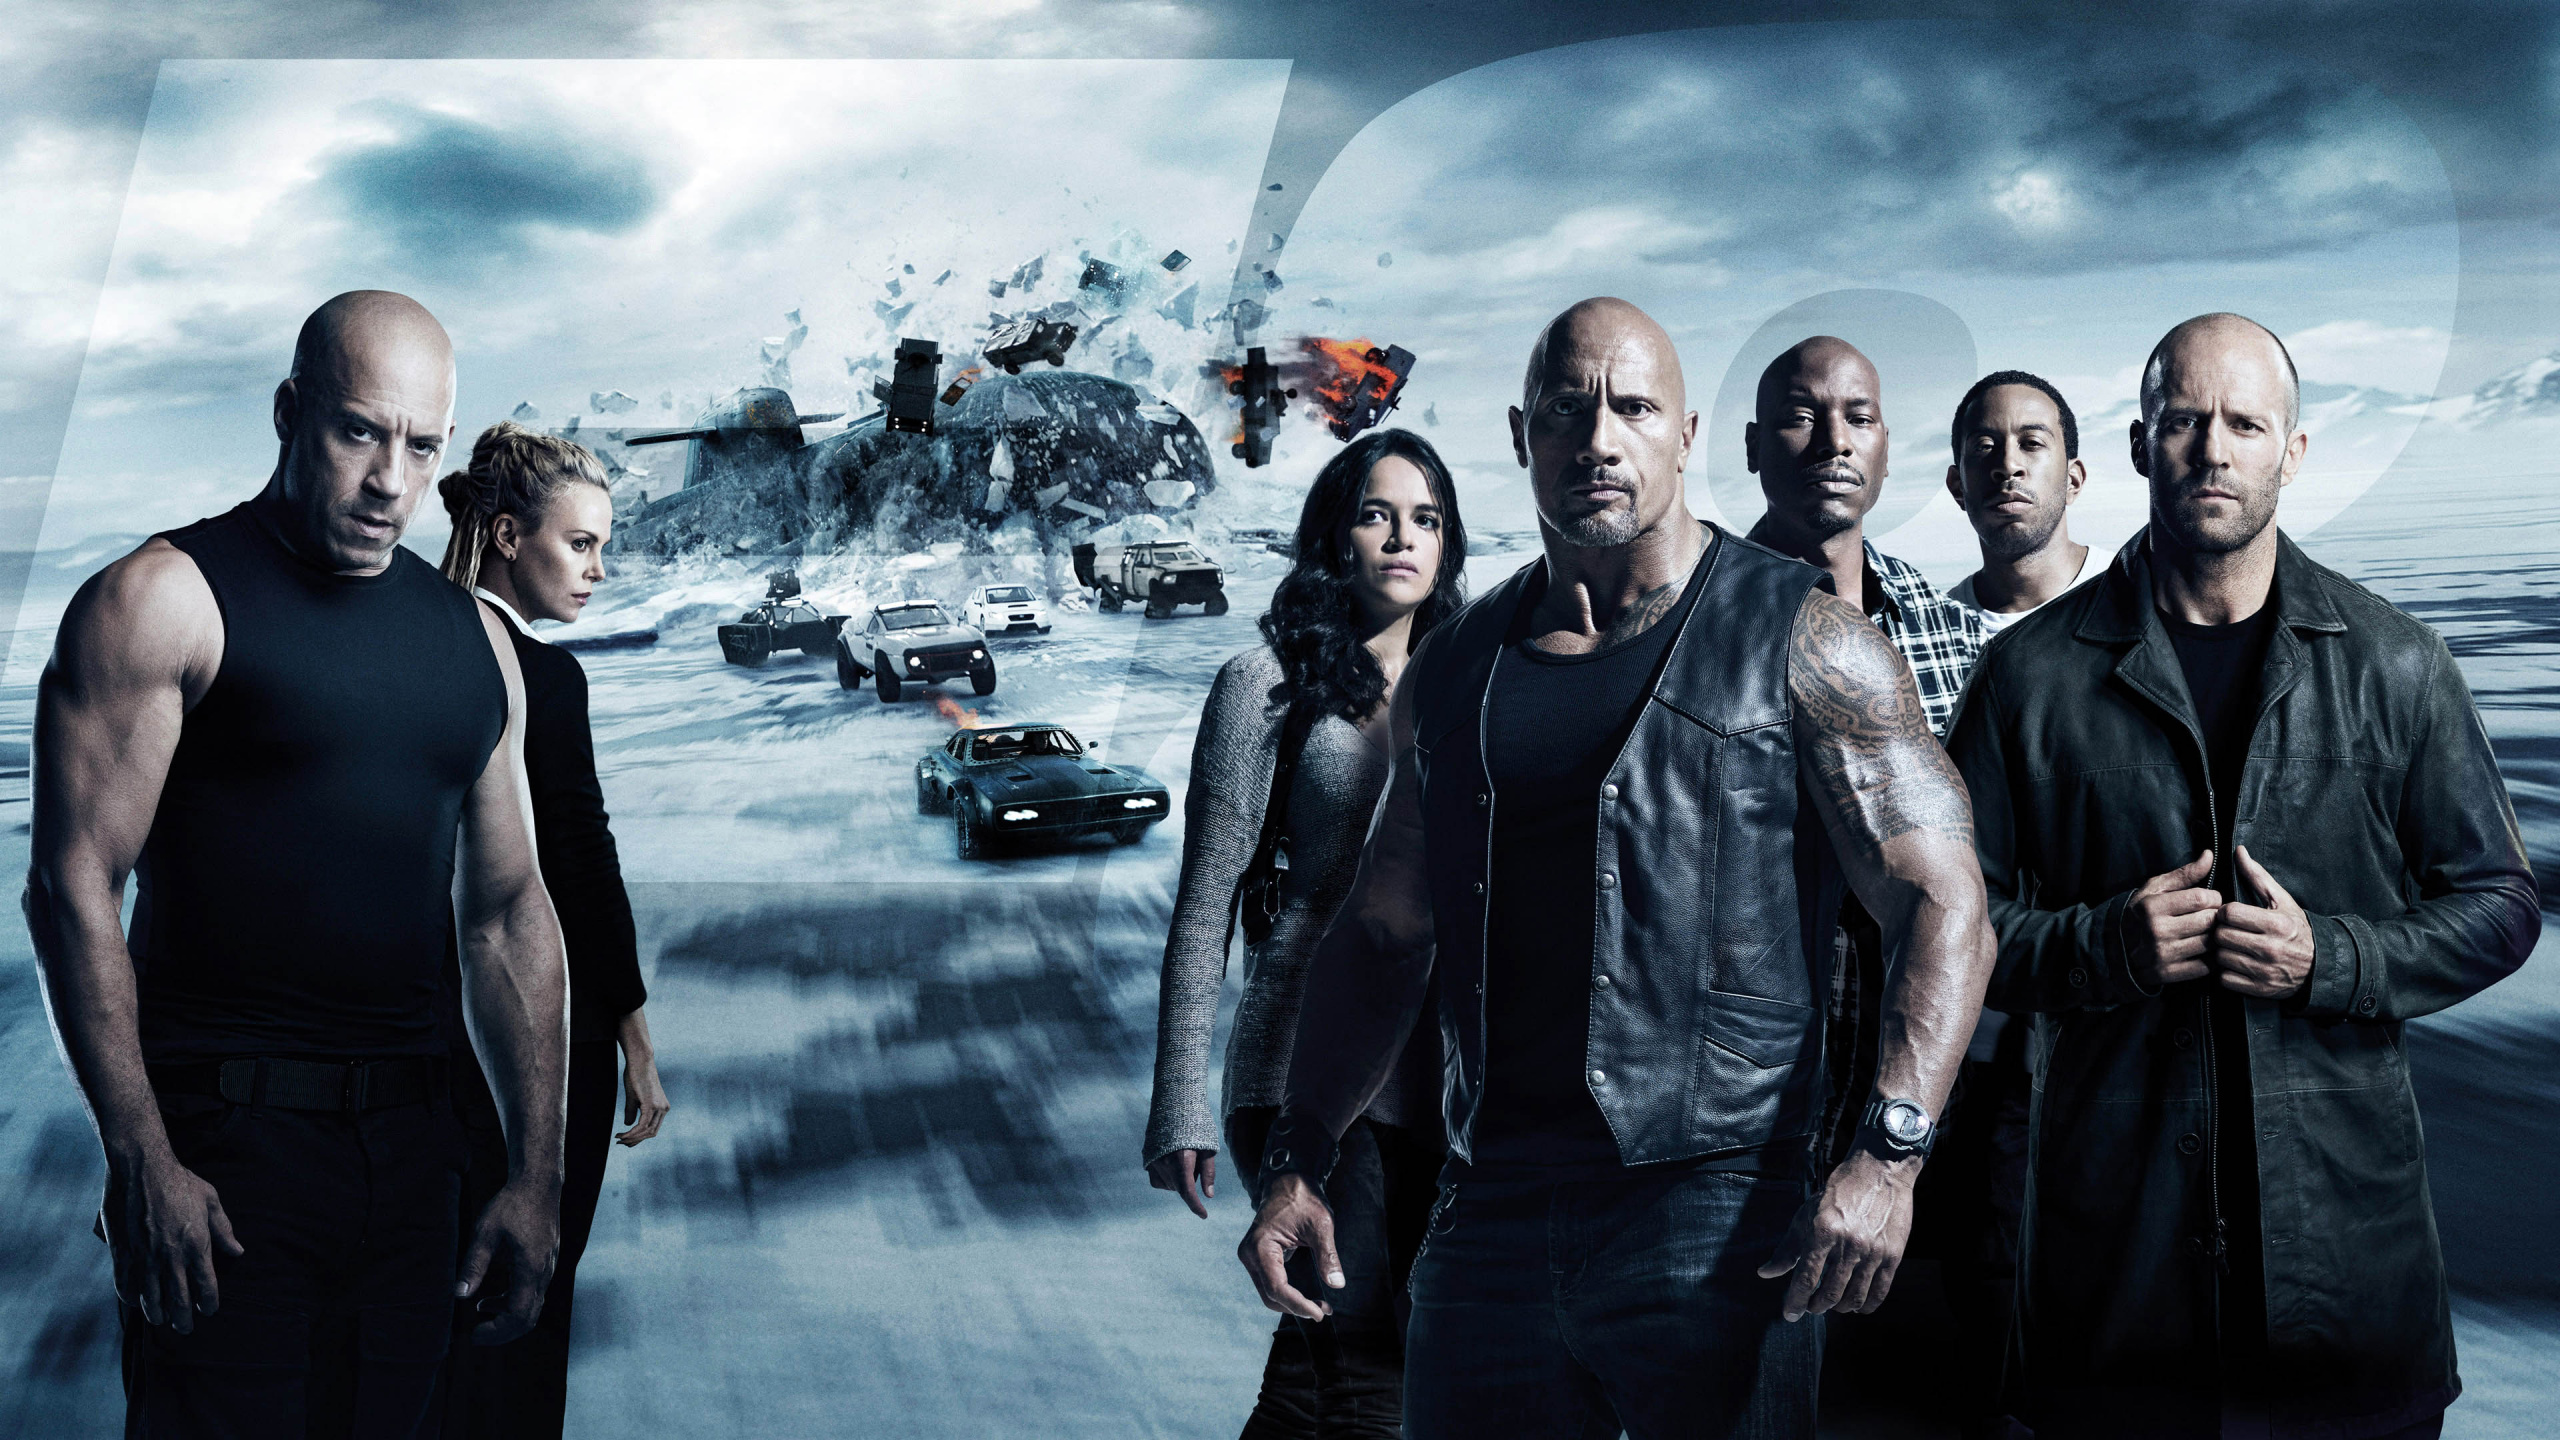 德韦恩*约翰逊, Vin Diesel, 速度激情, 速度与激情, 7愤怒 壁纸 2560x1440 允许